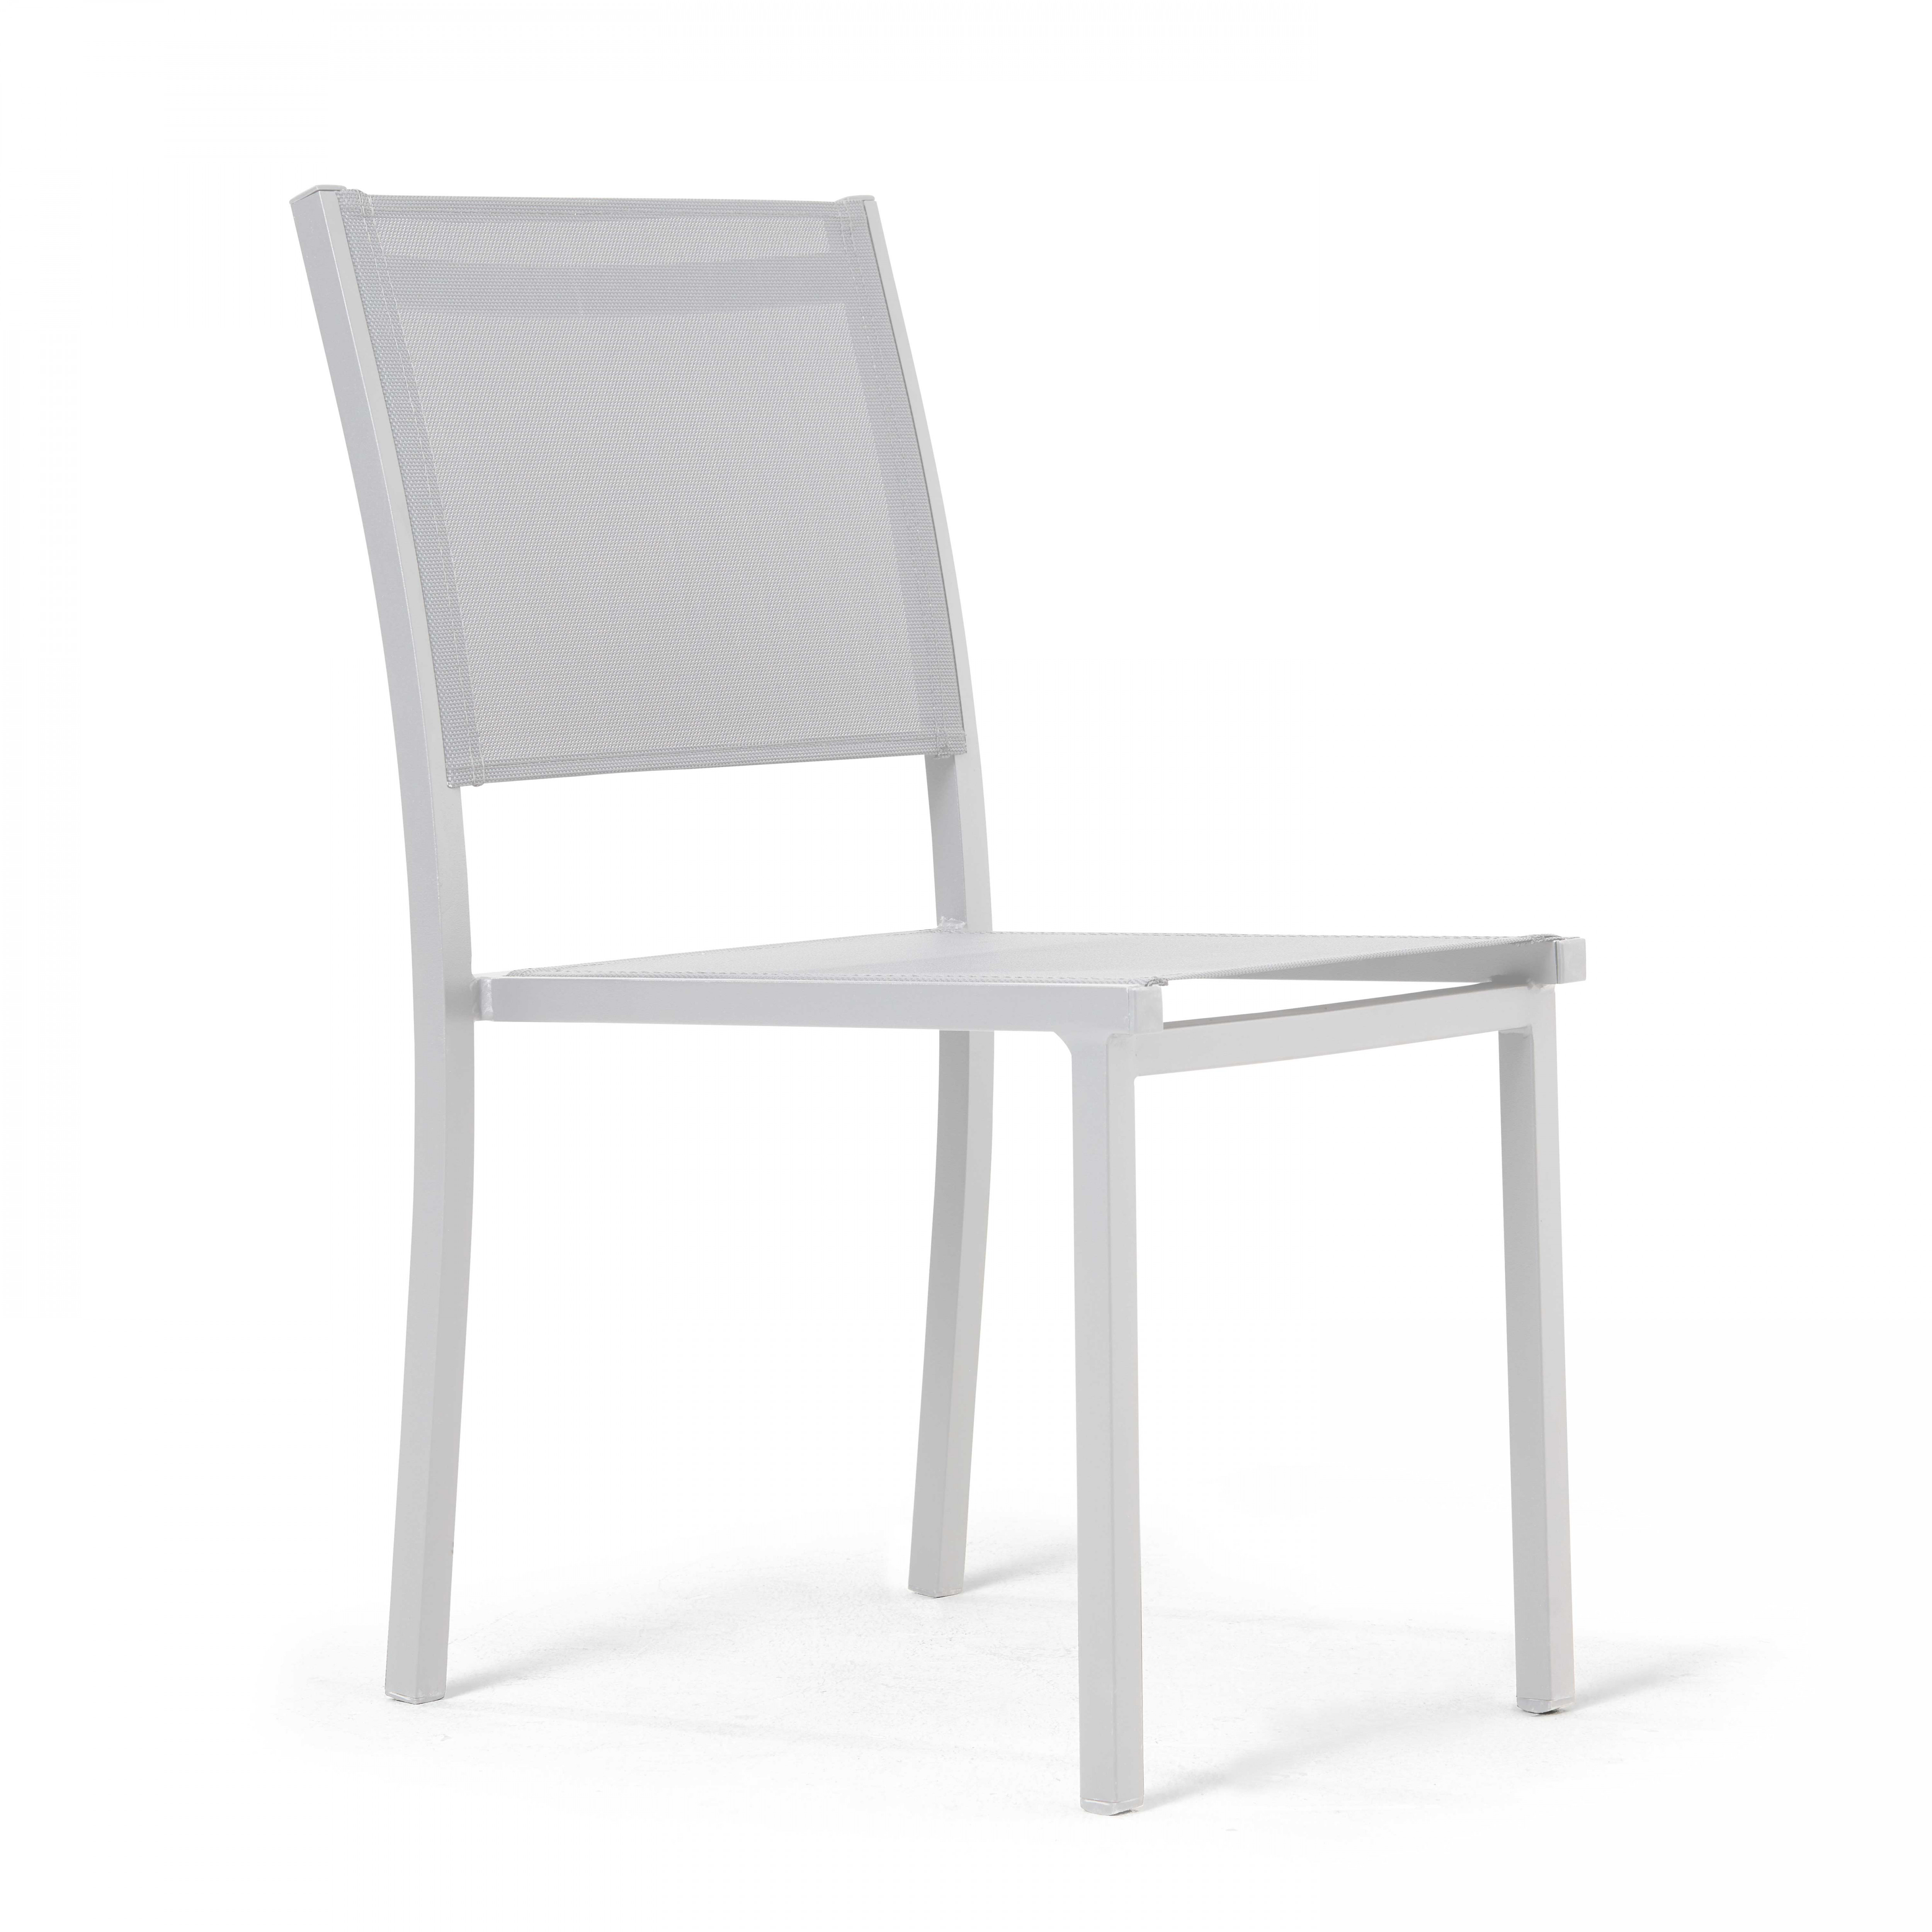 Chaise de jardin en aluminium et textilène